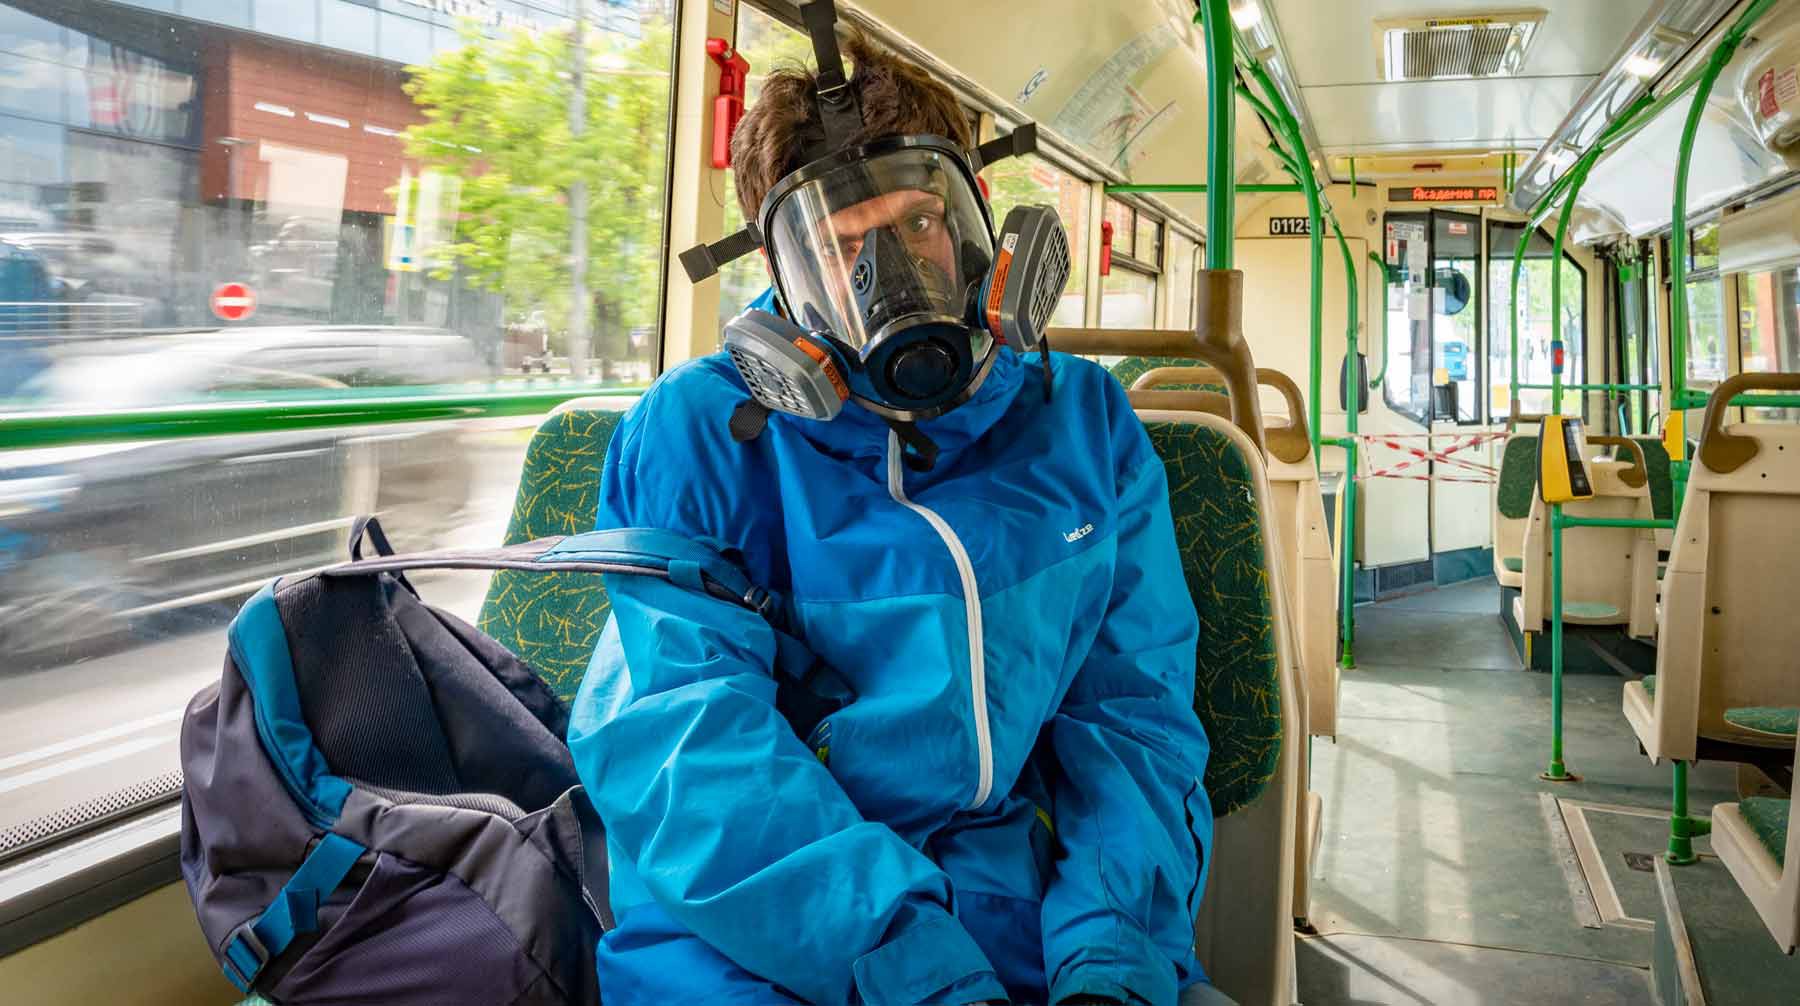 Dailystorm - Российские ученые раскритиковали требование носить маски на улице